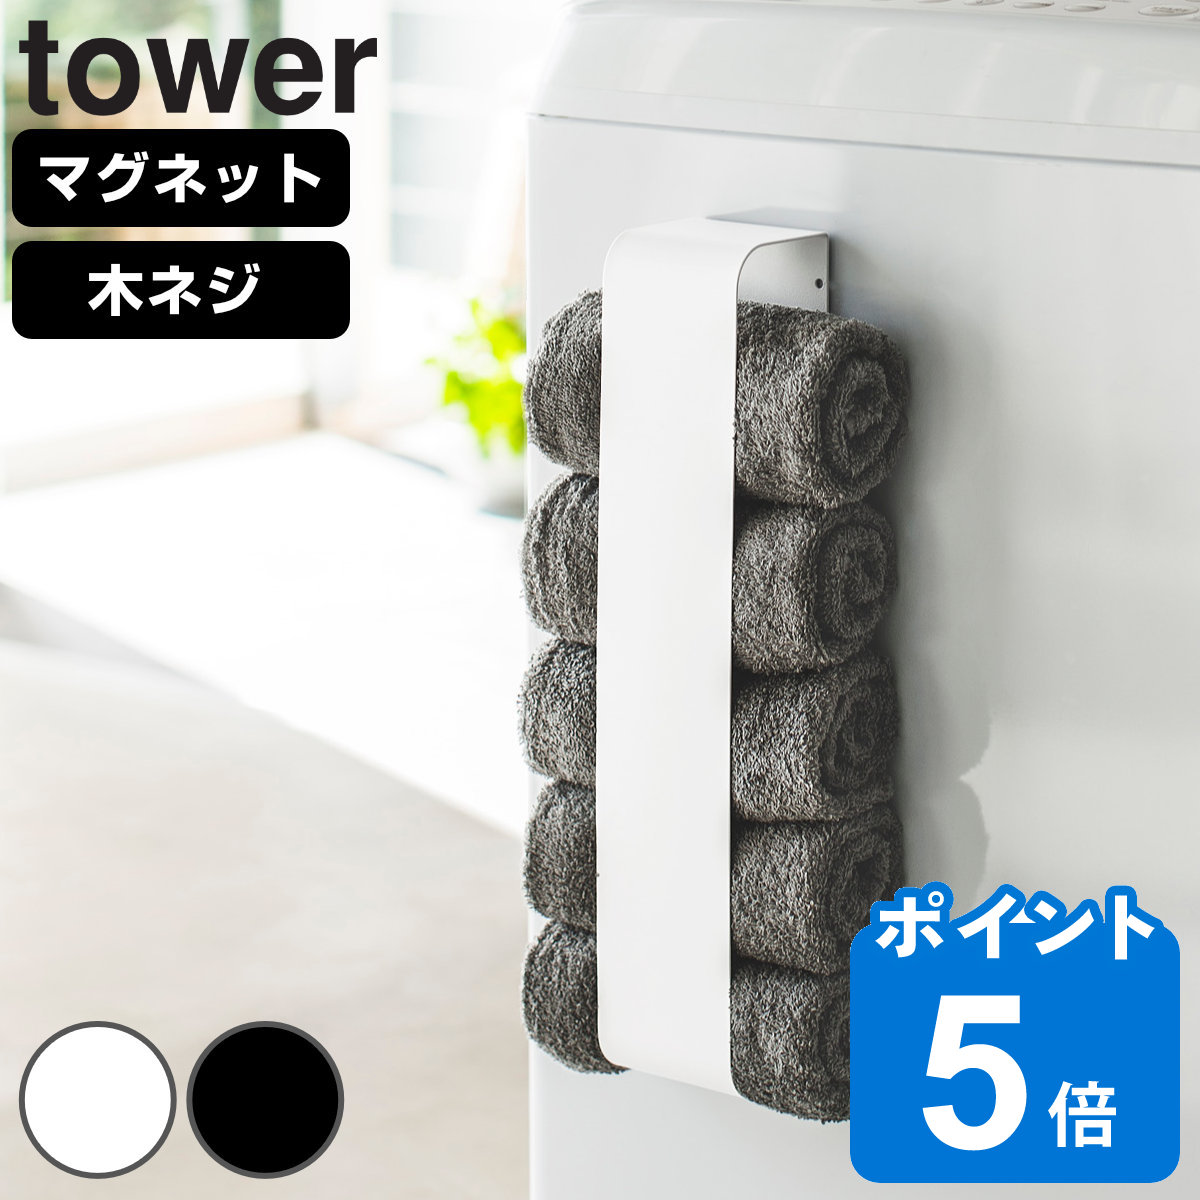 山崎実業 tower マグネットタオルホルダー タワー